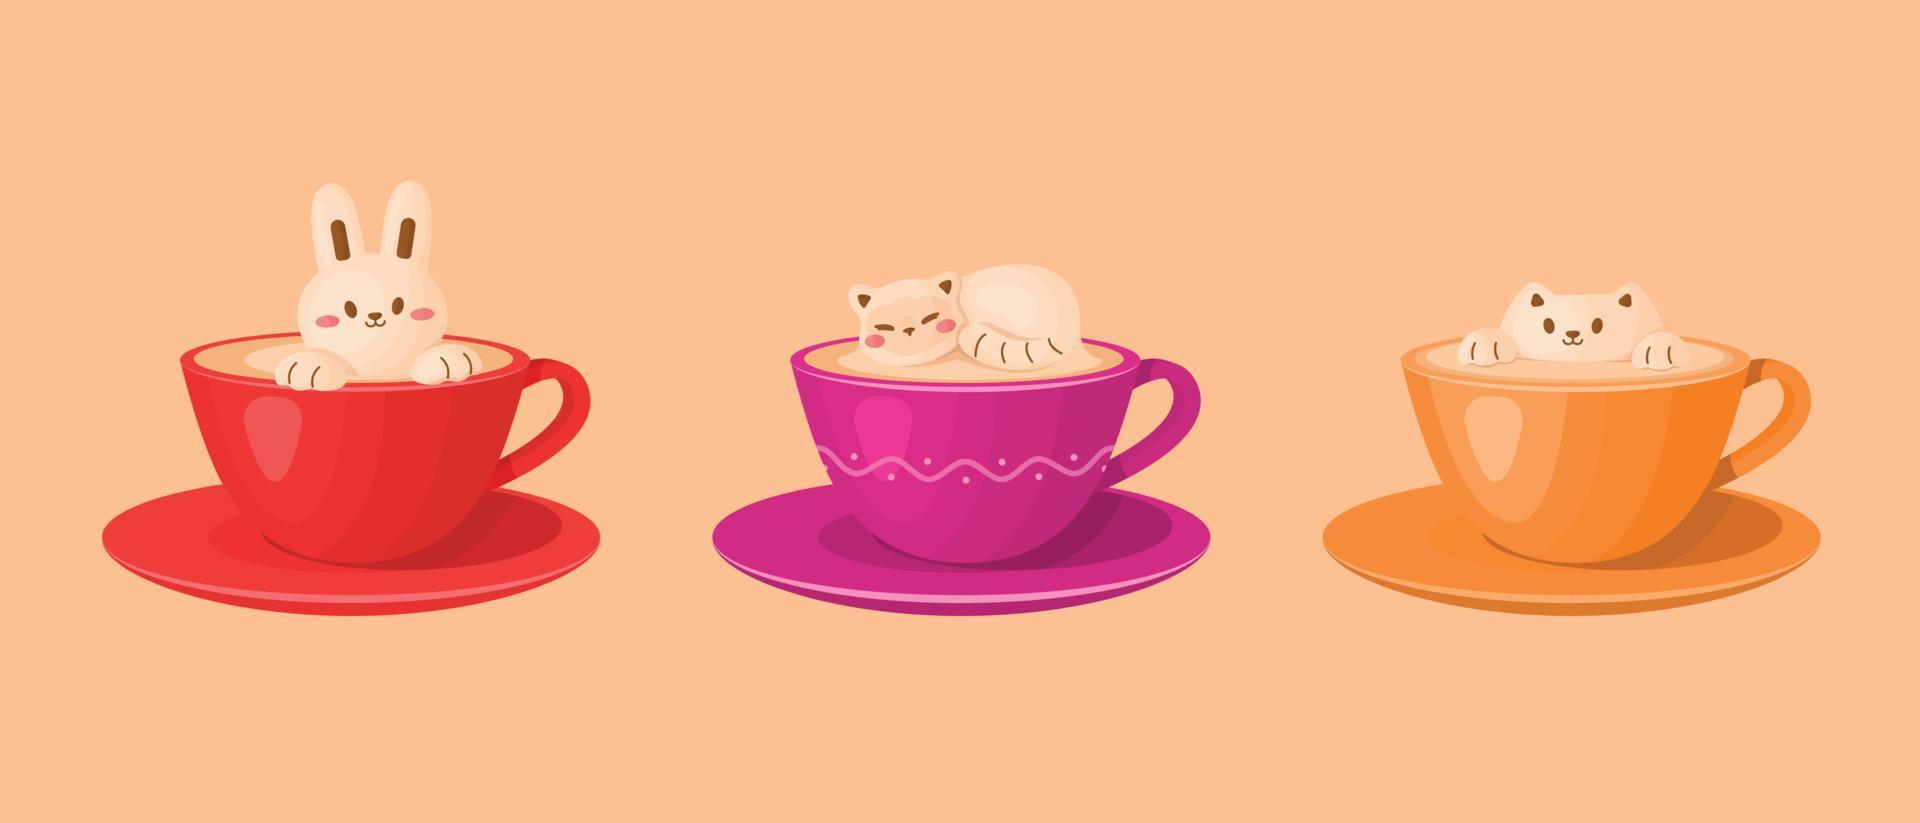 kaffe koppar av skum mjölk i 3d latte konst, katt och kanin form. vektor